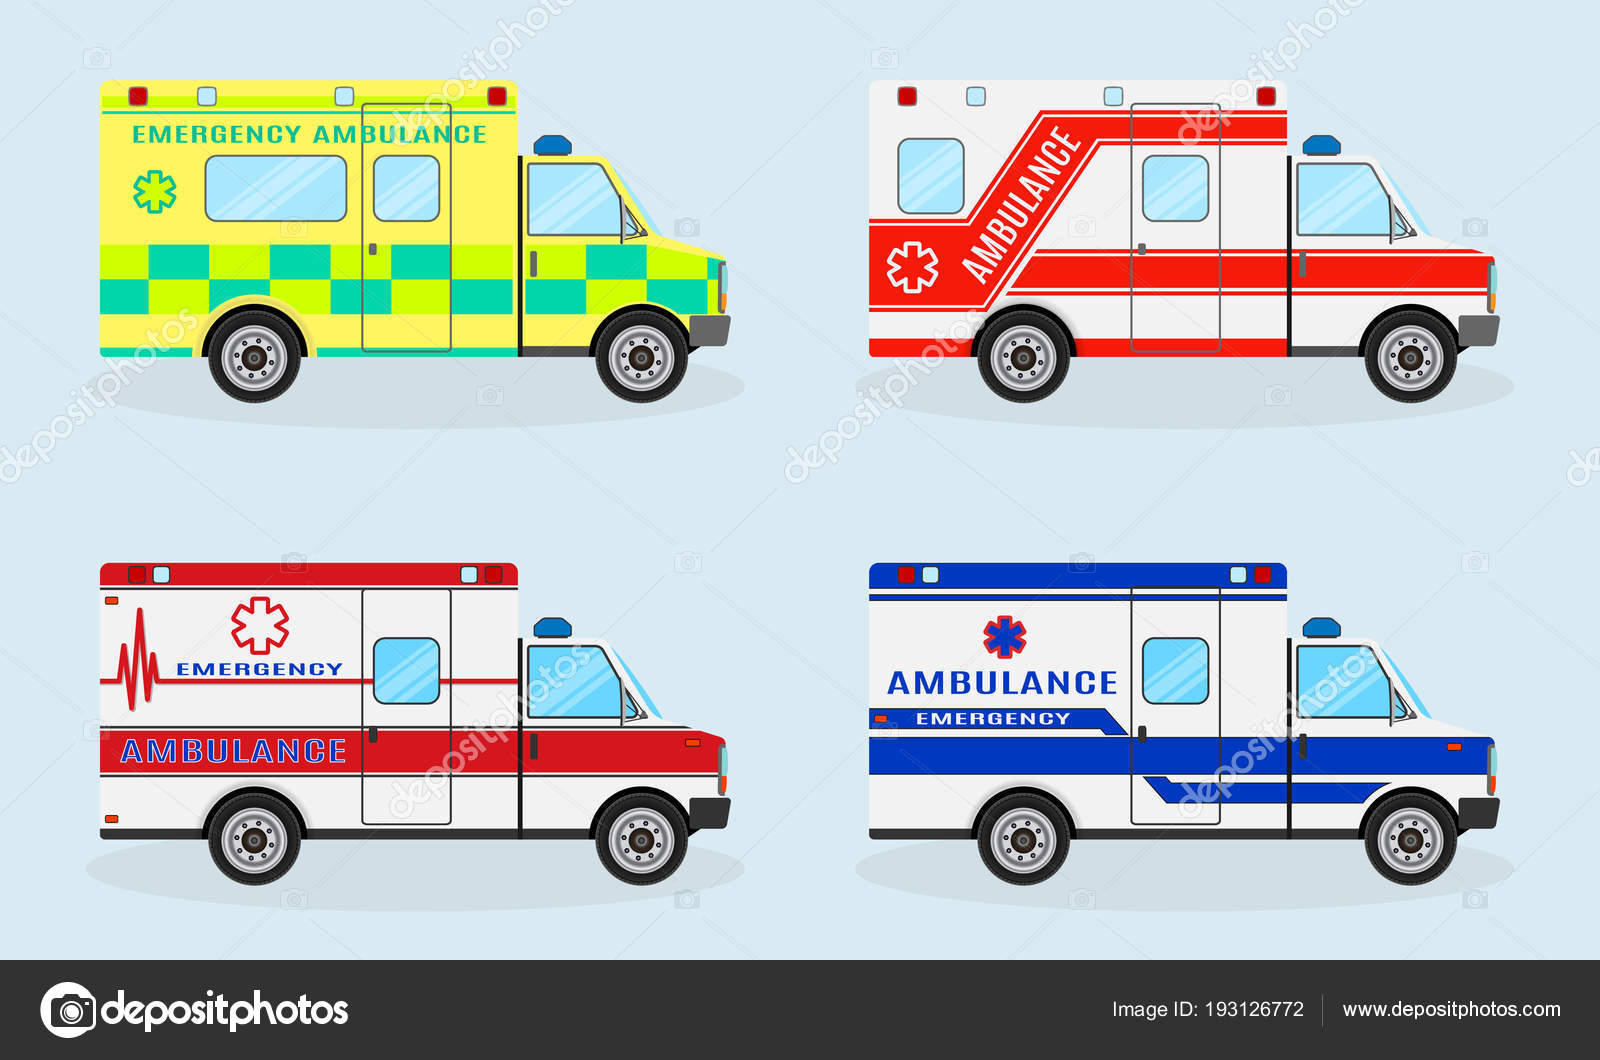 Графика на автомобилях скорой помощи